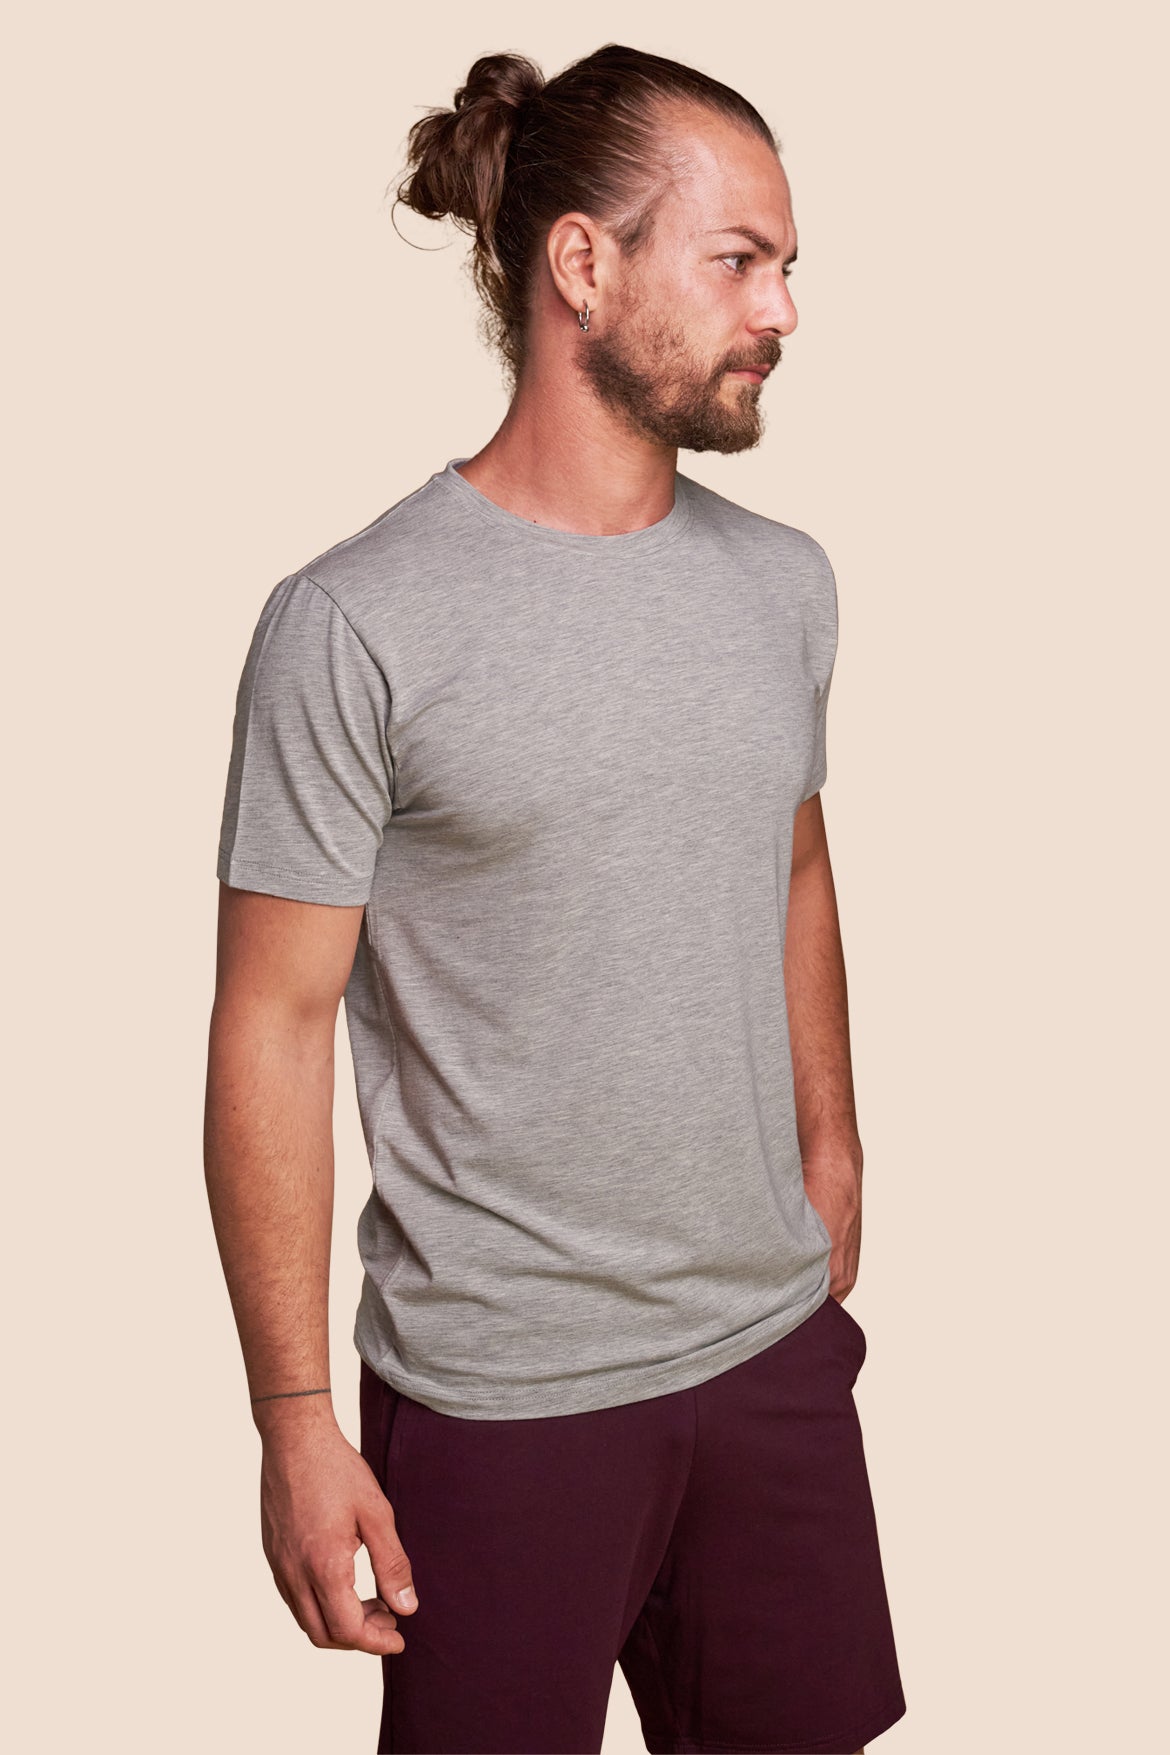 Pétrone T-shirt manches courtes coton pima micromodal gris chiné clair homme